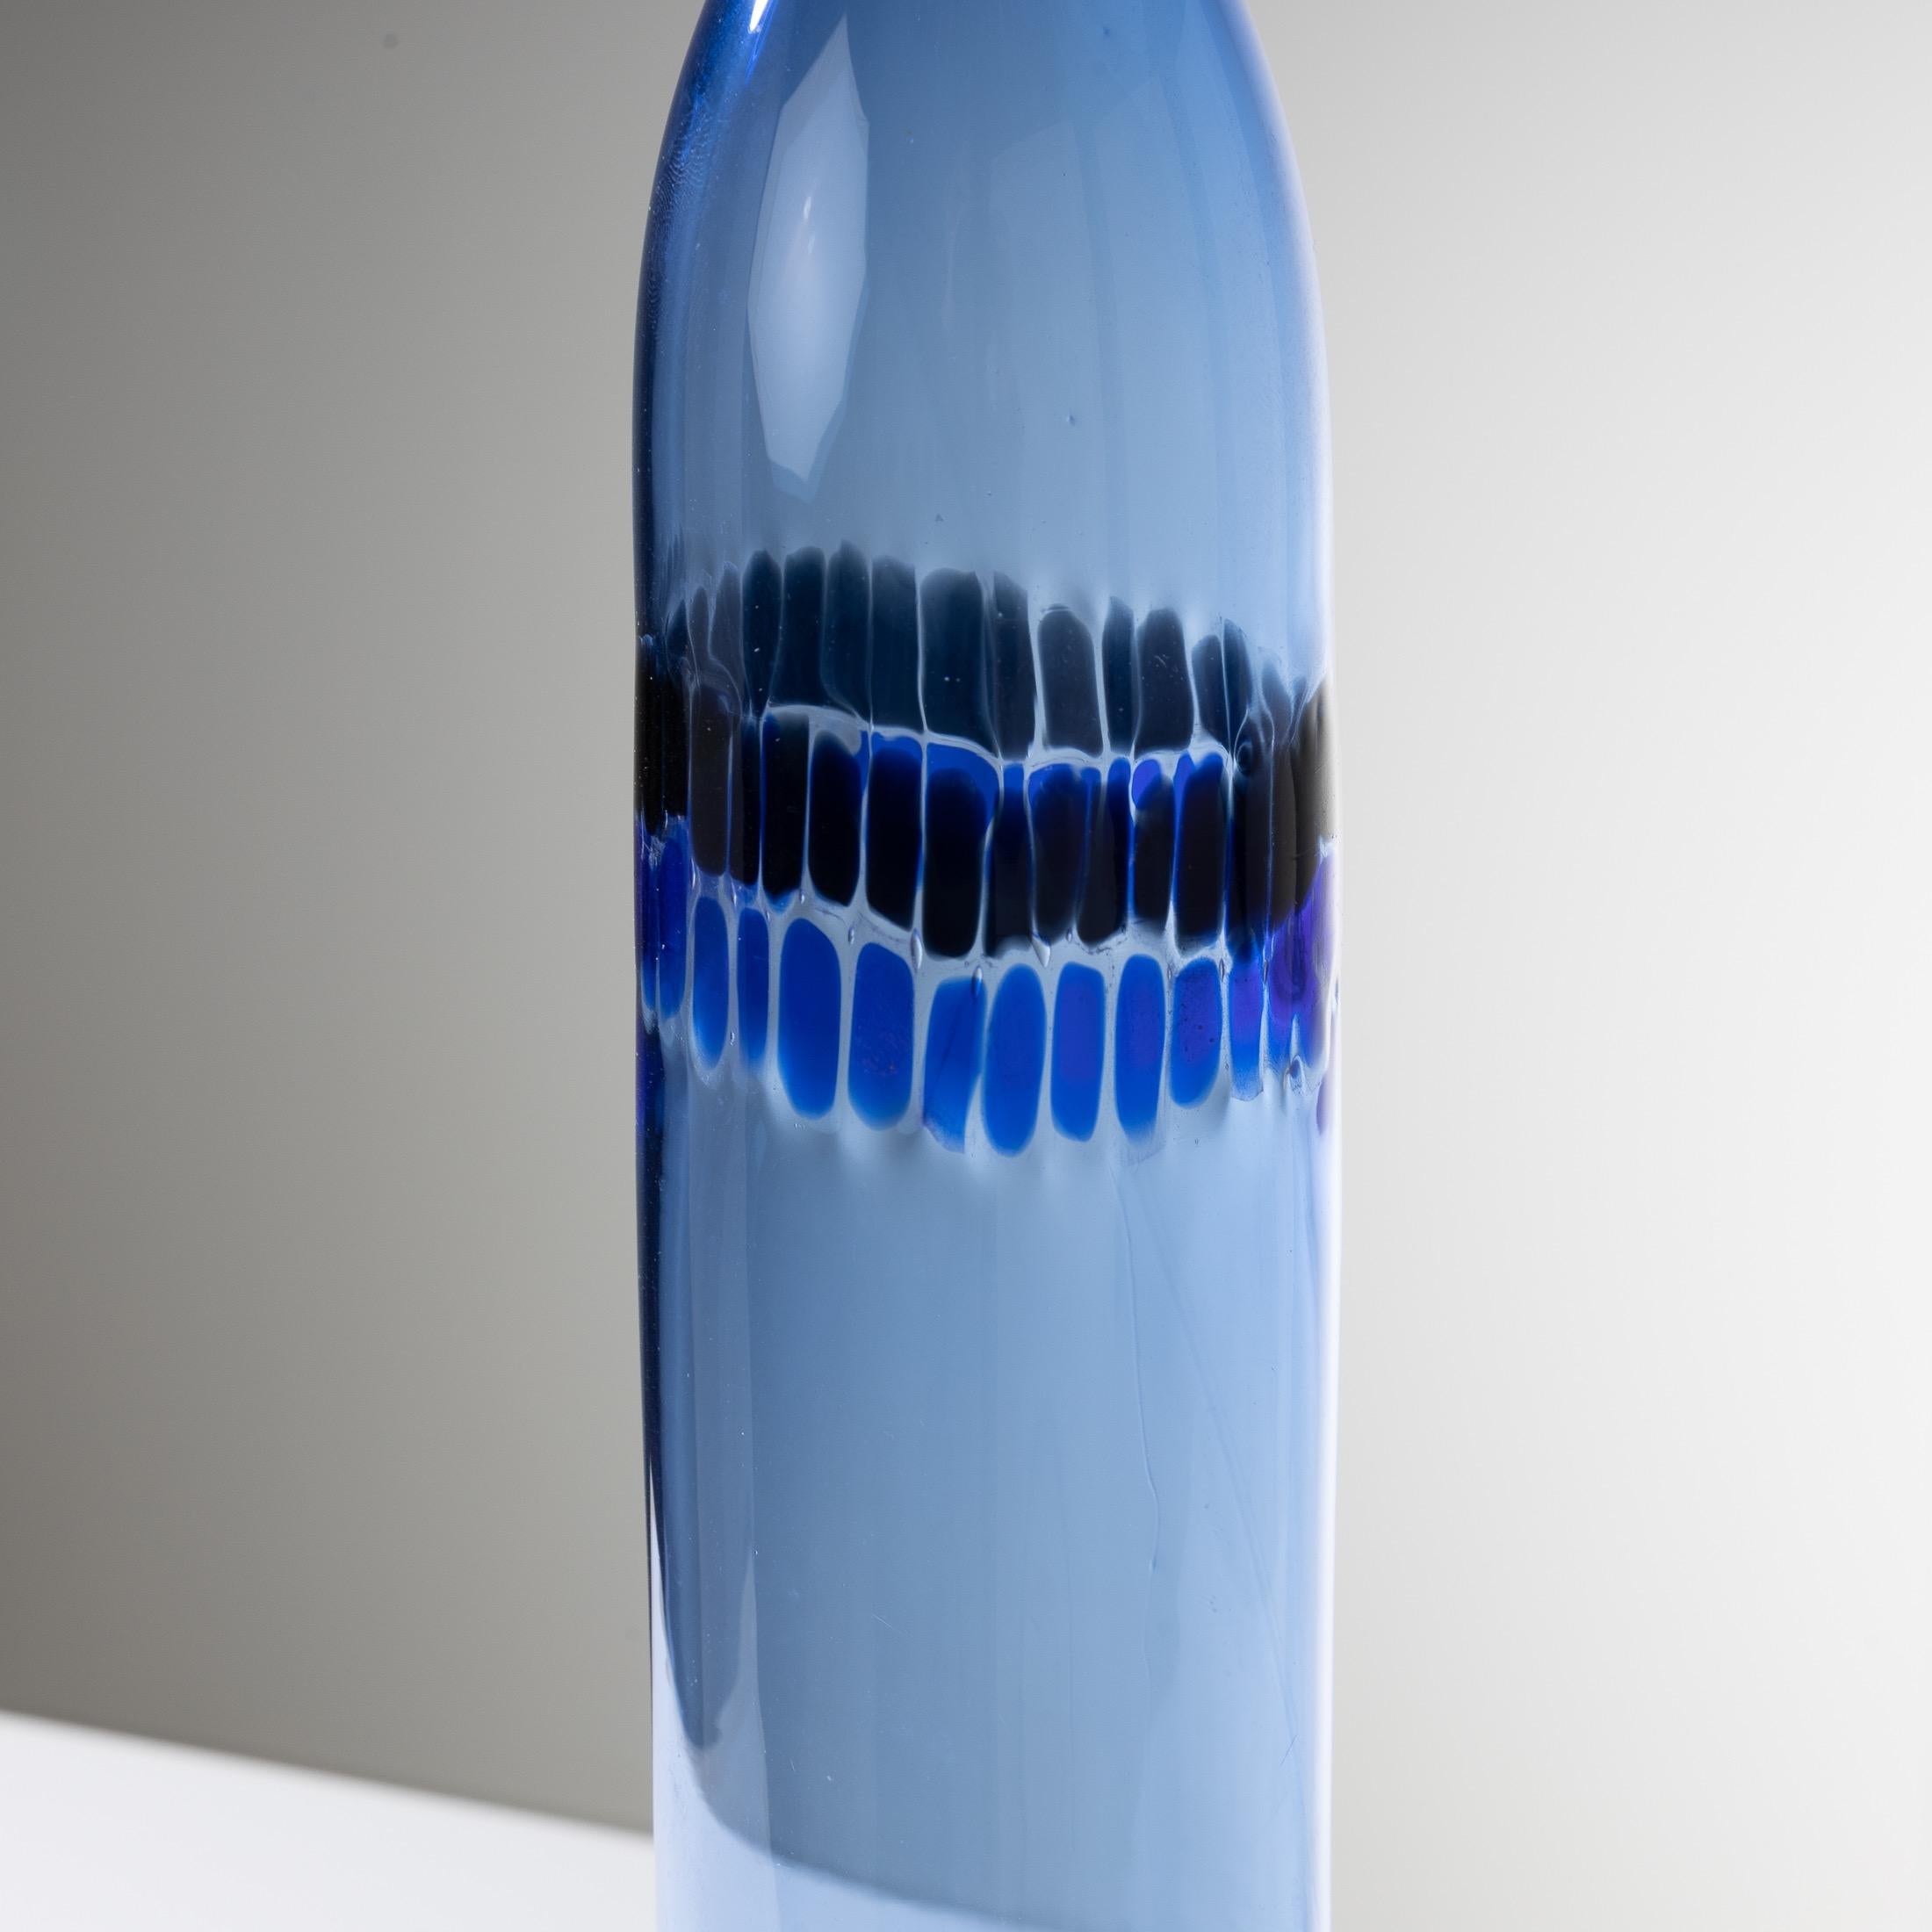 Italian Tall Murano Glass Vase with Murrines by Peter Pelzel, Vetreria Vistosi Murano